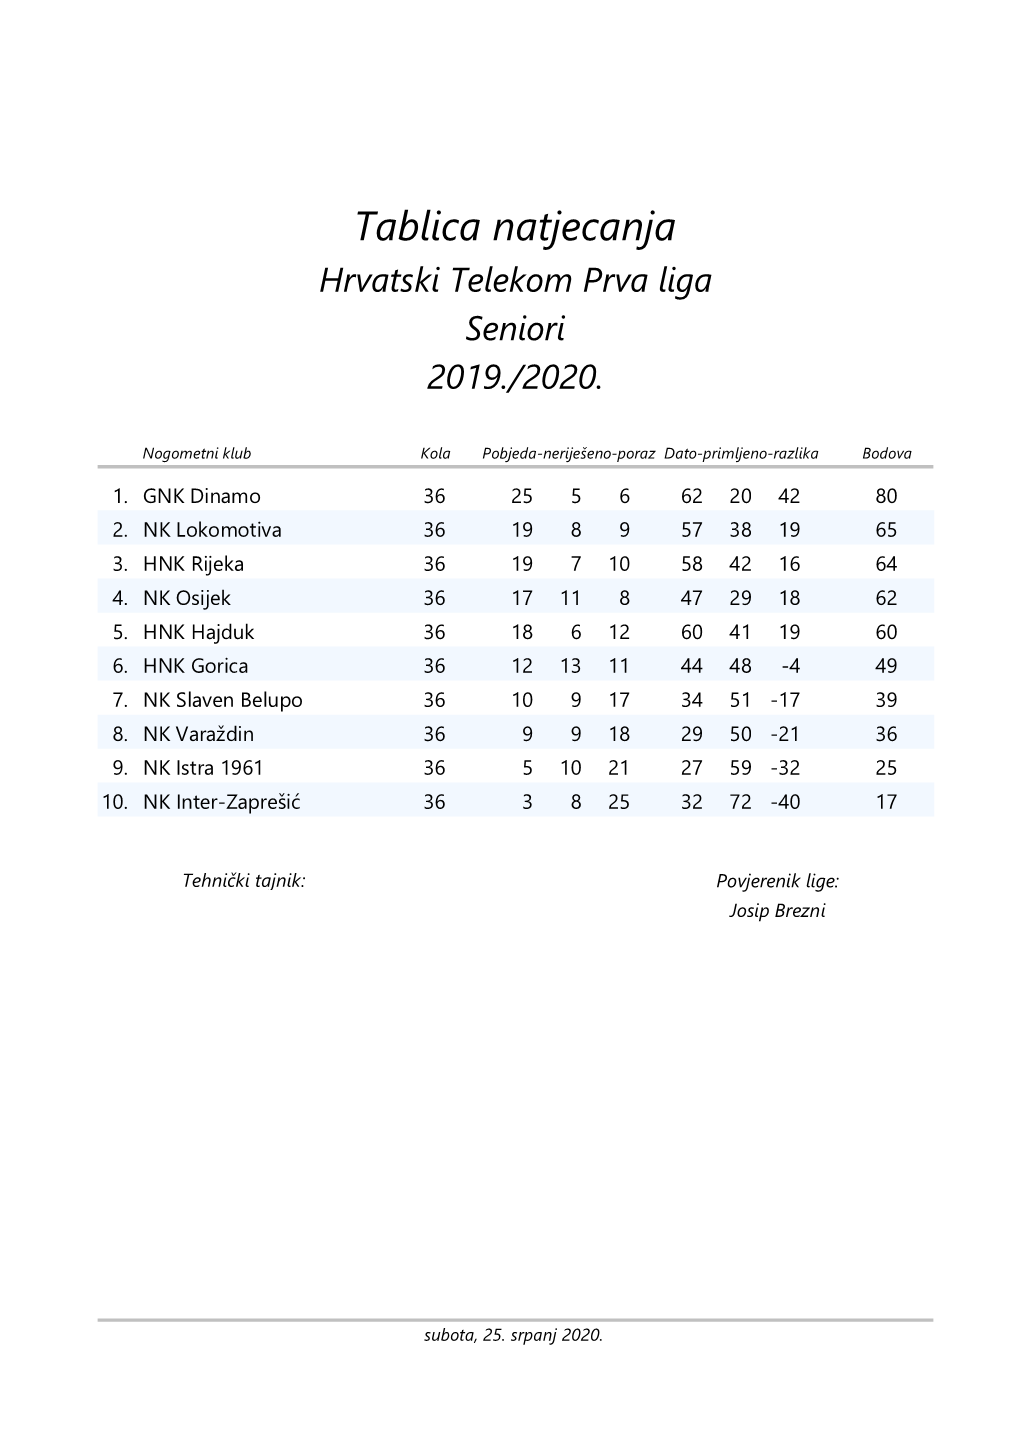 Tablica Natjecanja Hrvatski Telekom Prva Liga Seniori 2019./2020